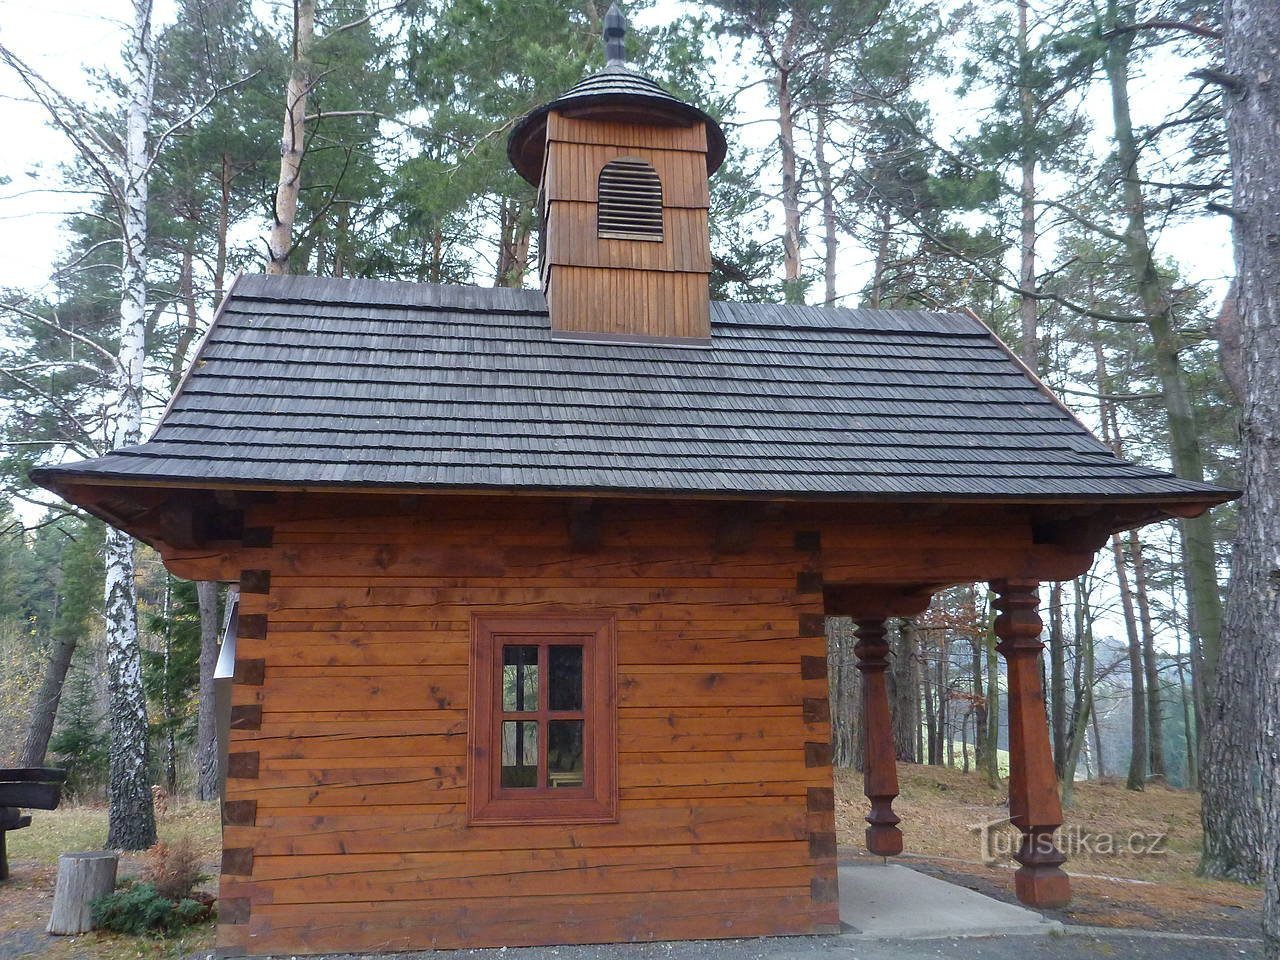 The wooden chapel of St. Hubert above Valašská Senicá.